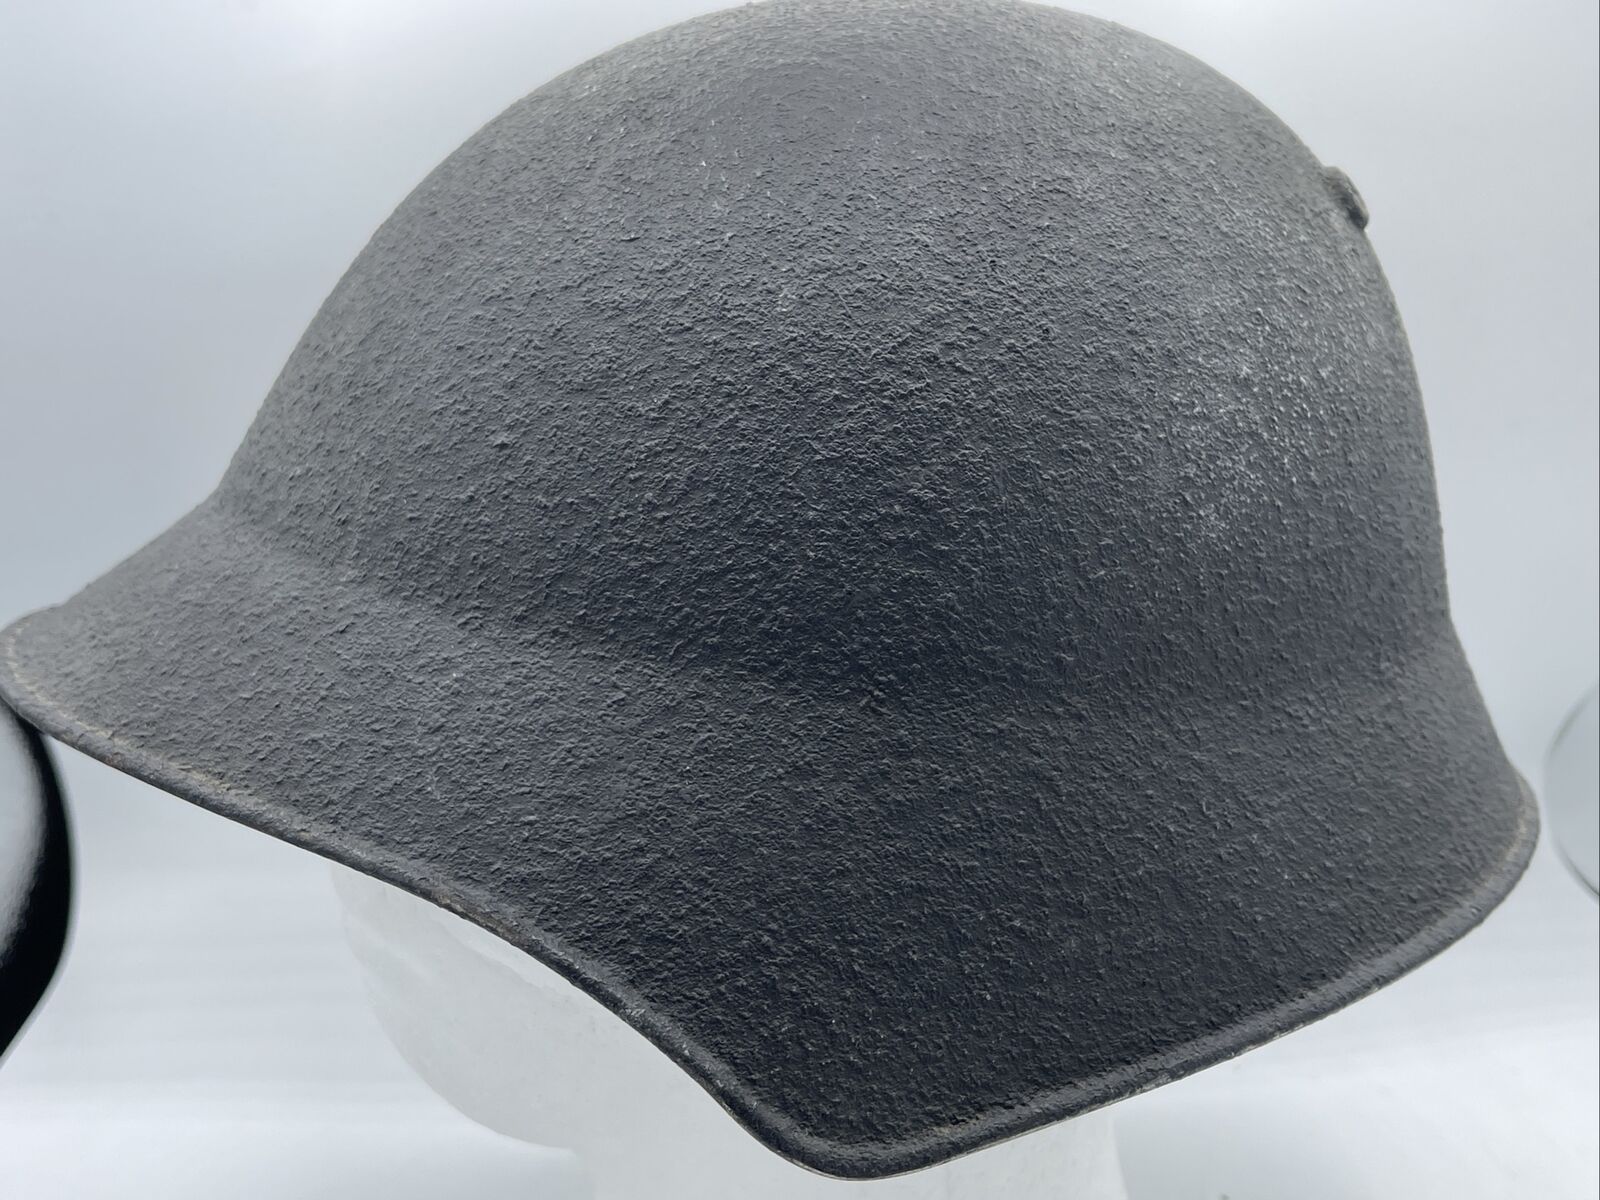 World War II WW2 WWII Swiss M18 Military Combat Helmet Star Wars Death Star